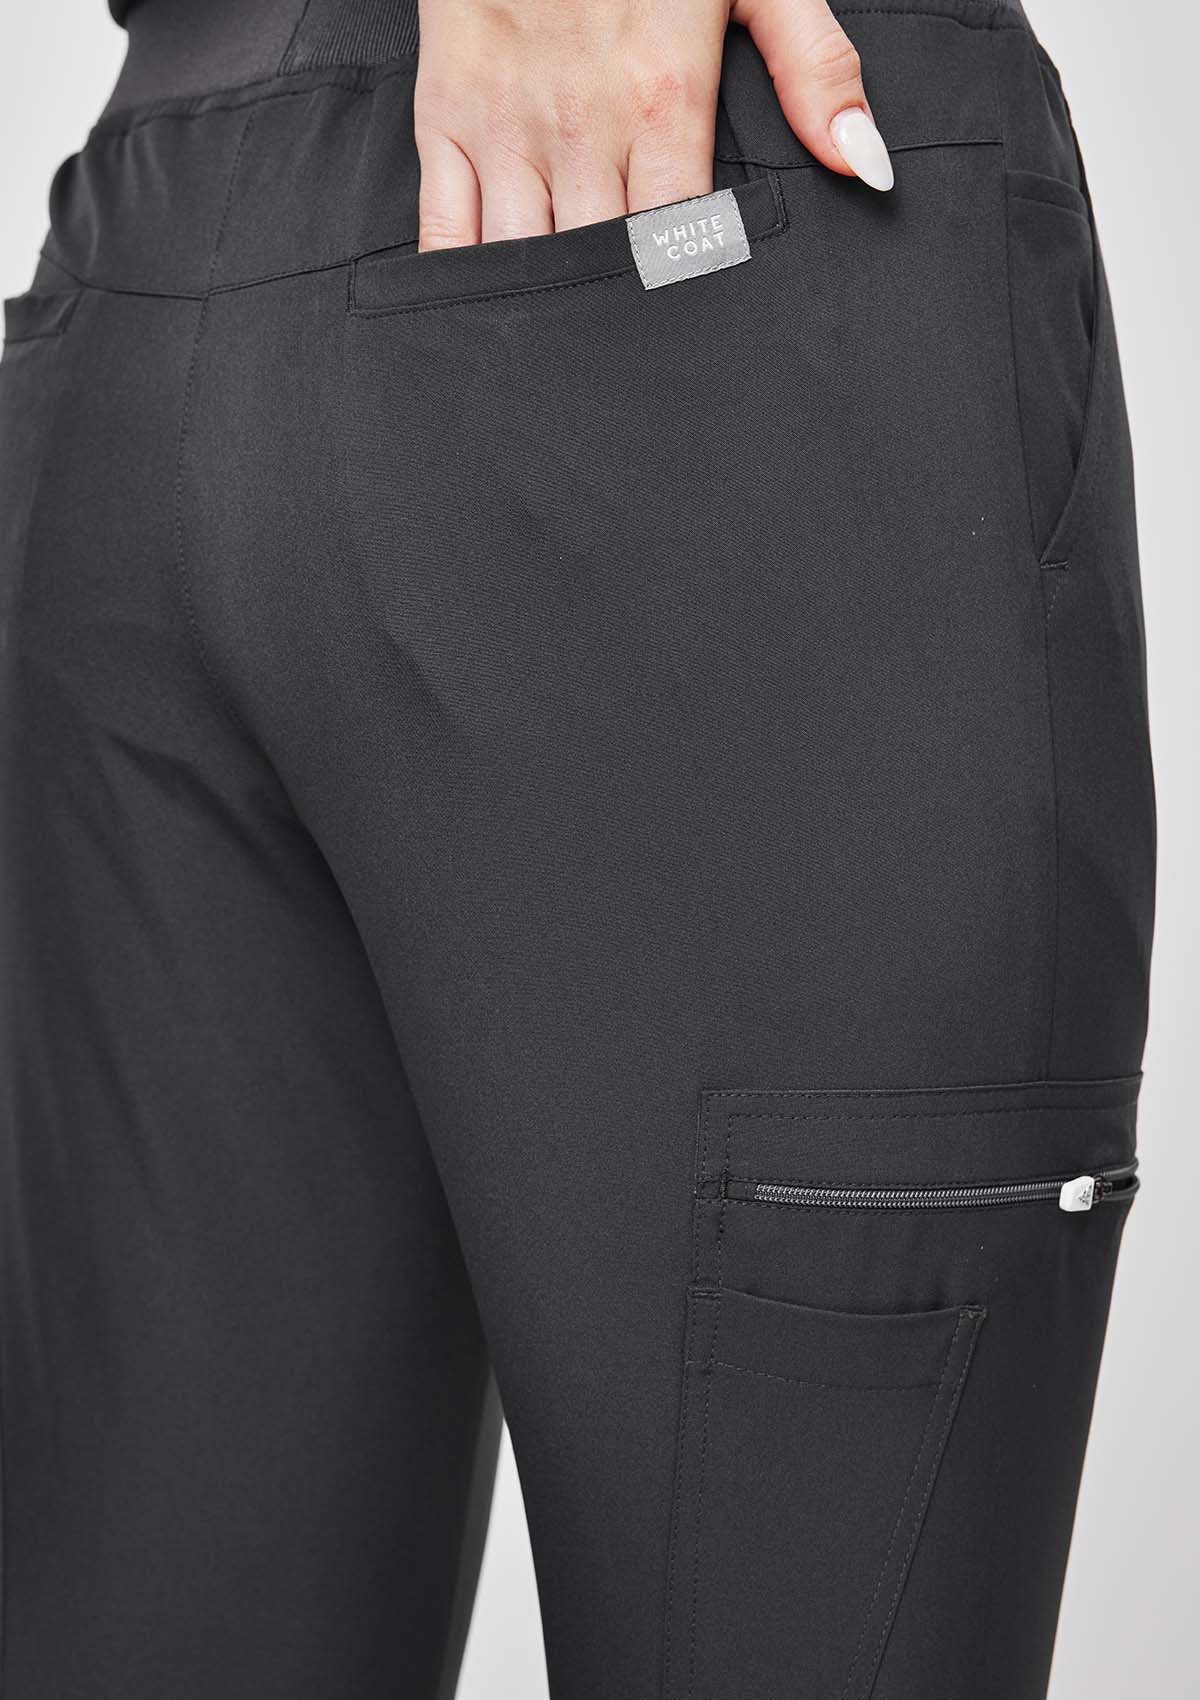 Jogger MoveTech® Scrub Pants - Women / Graphite